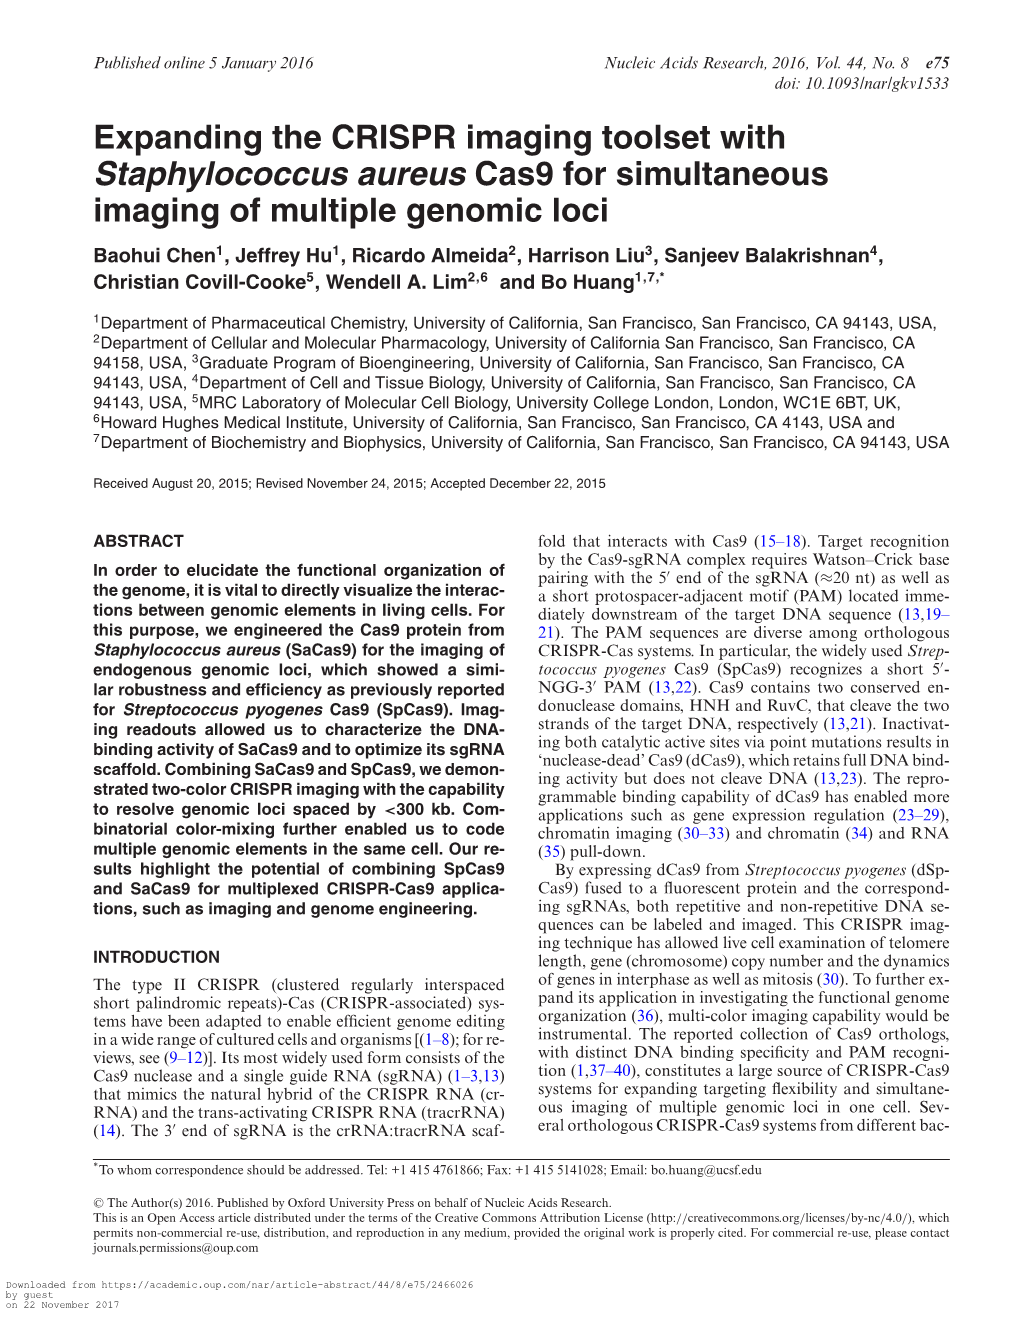 Staphylococcus Aureus Cas9 for Simultaneous